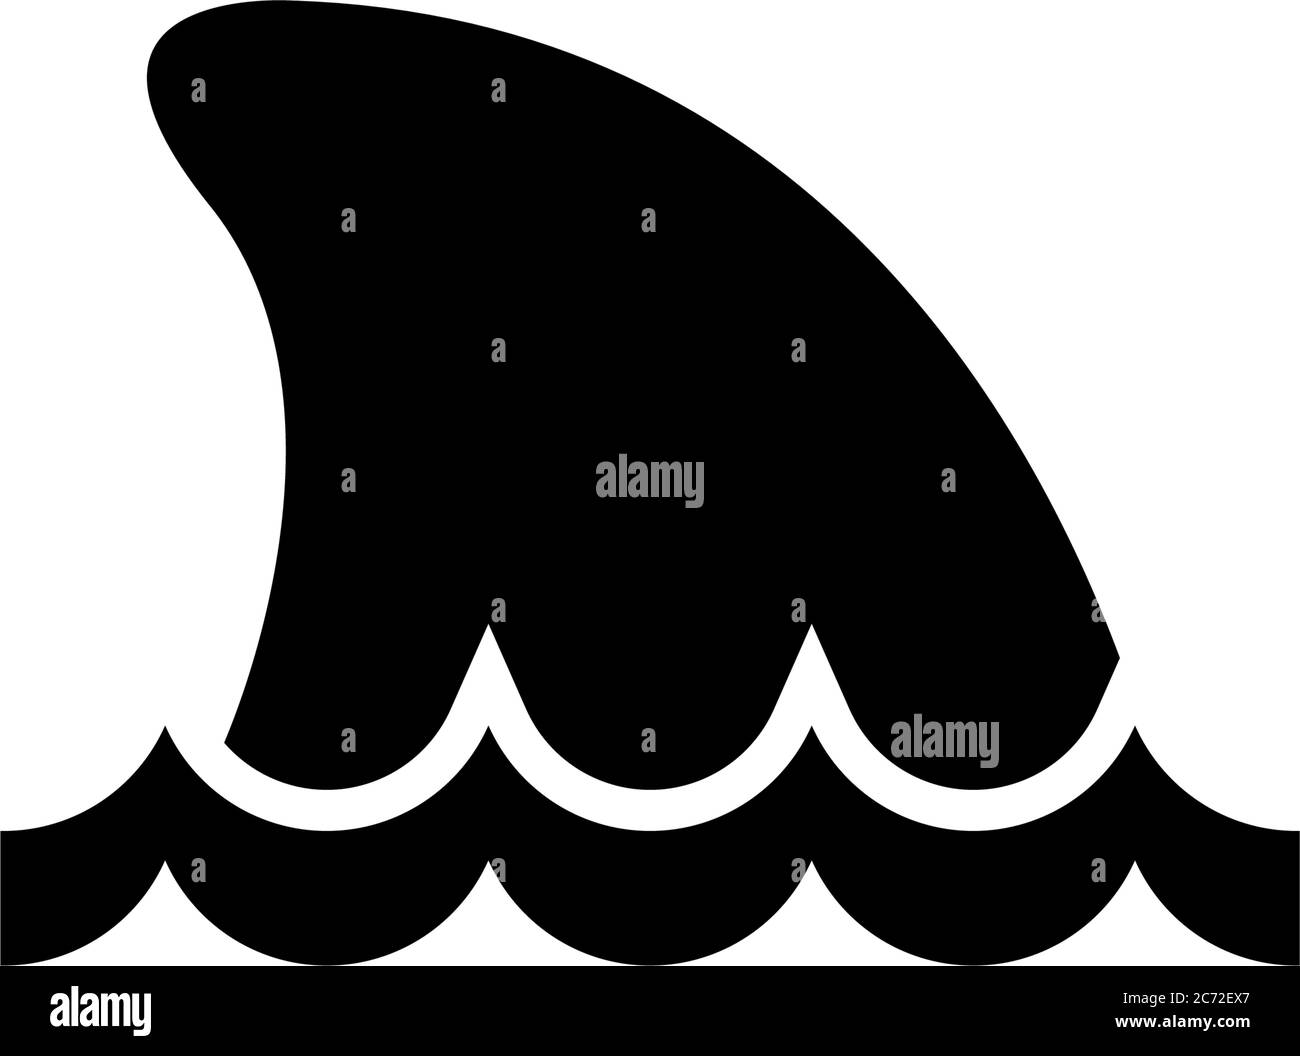 Hai Fin im Wasser, Meer oder Meer Predator. Abbildung des Symbols für flache Vektorgrafik. Einfaches schwarzes Symbol auf weißem Hintergrund. Hai Fin im Wasser, Sea Predator si Stock Vektor